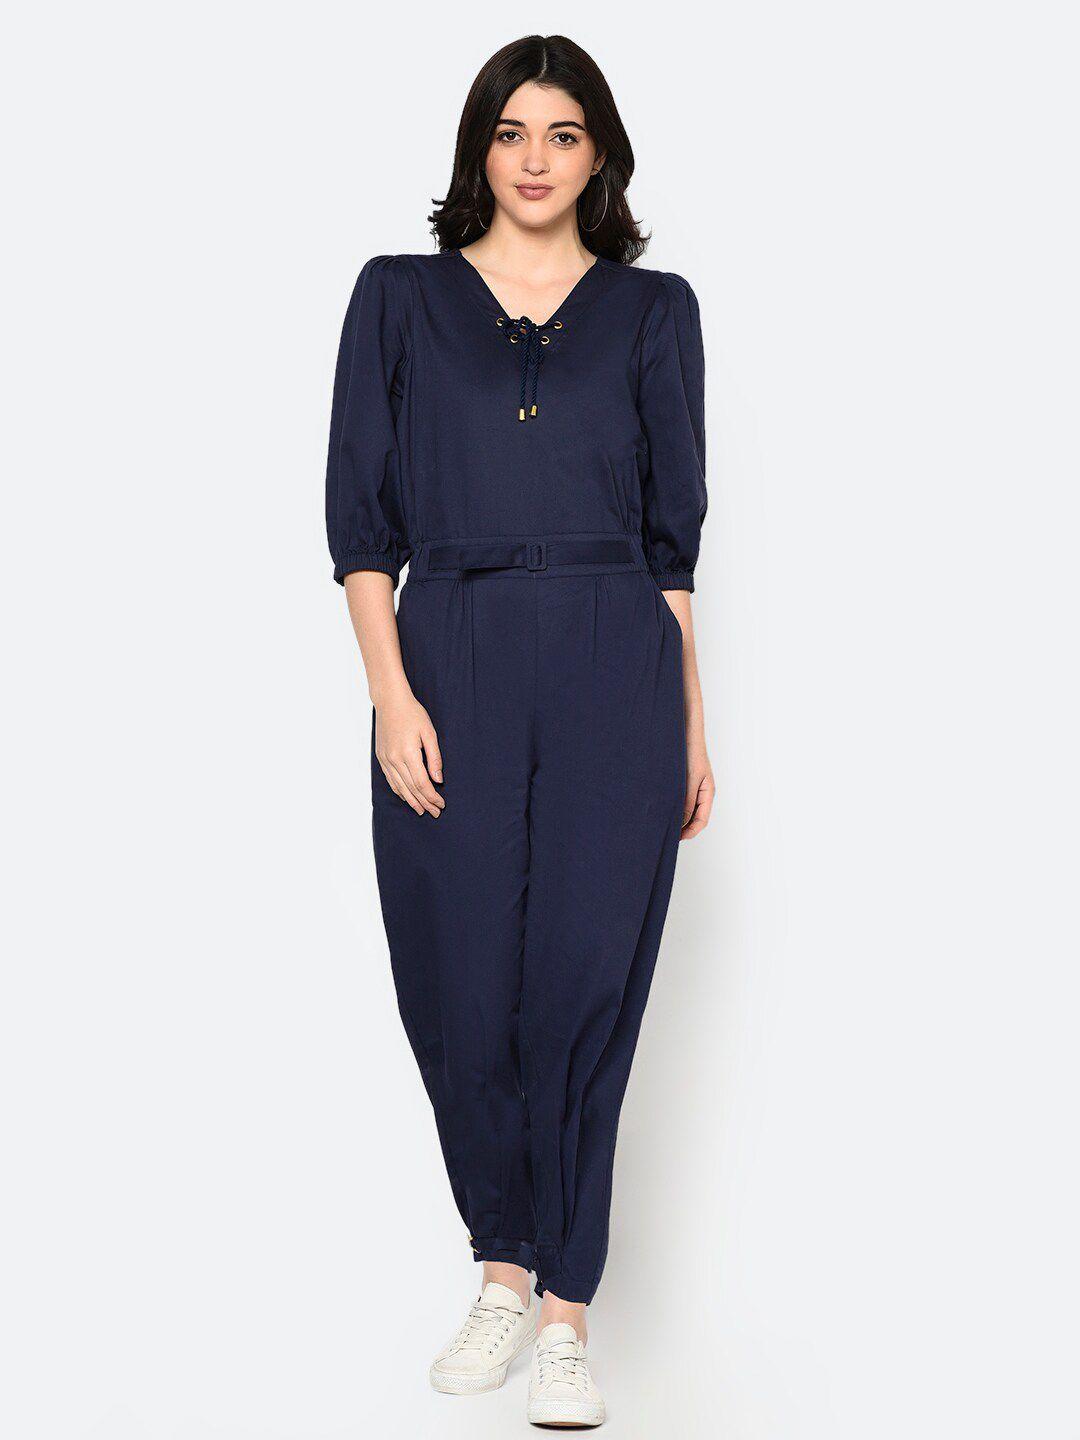 blanc9 women navy blue cotton solid  basic jumpsuit